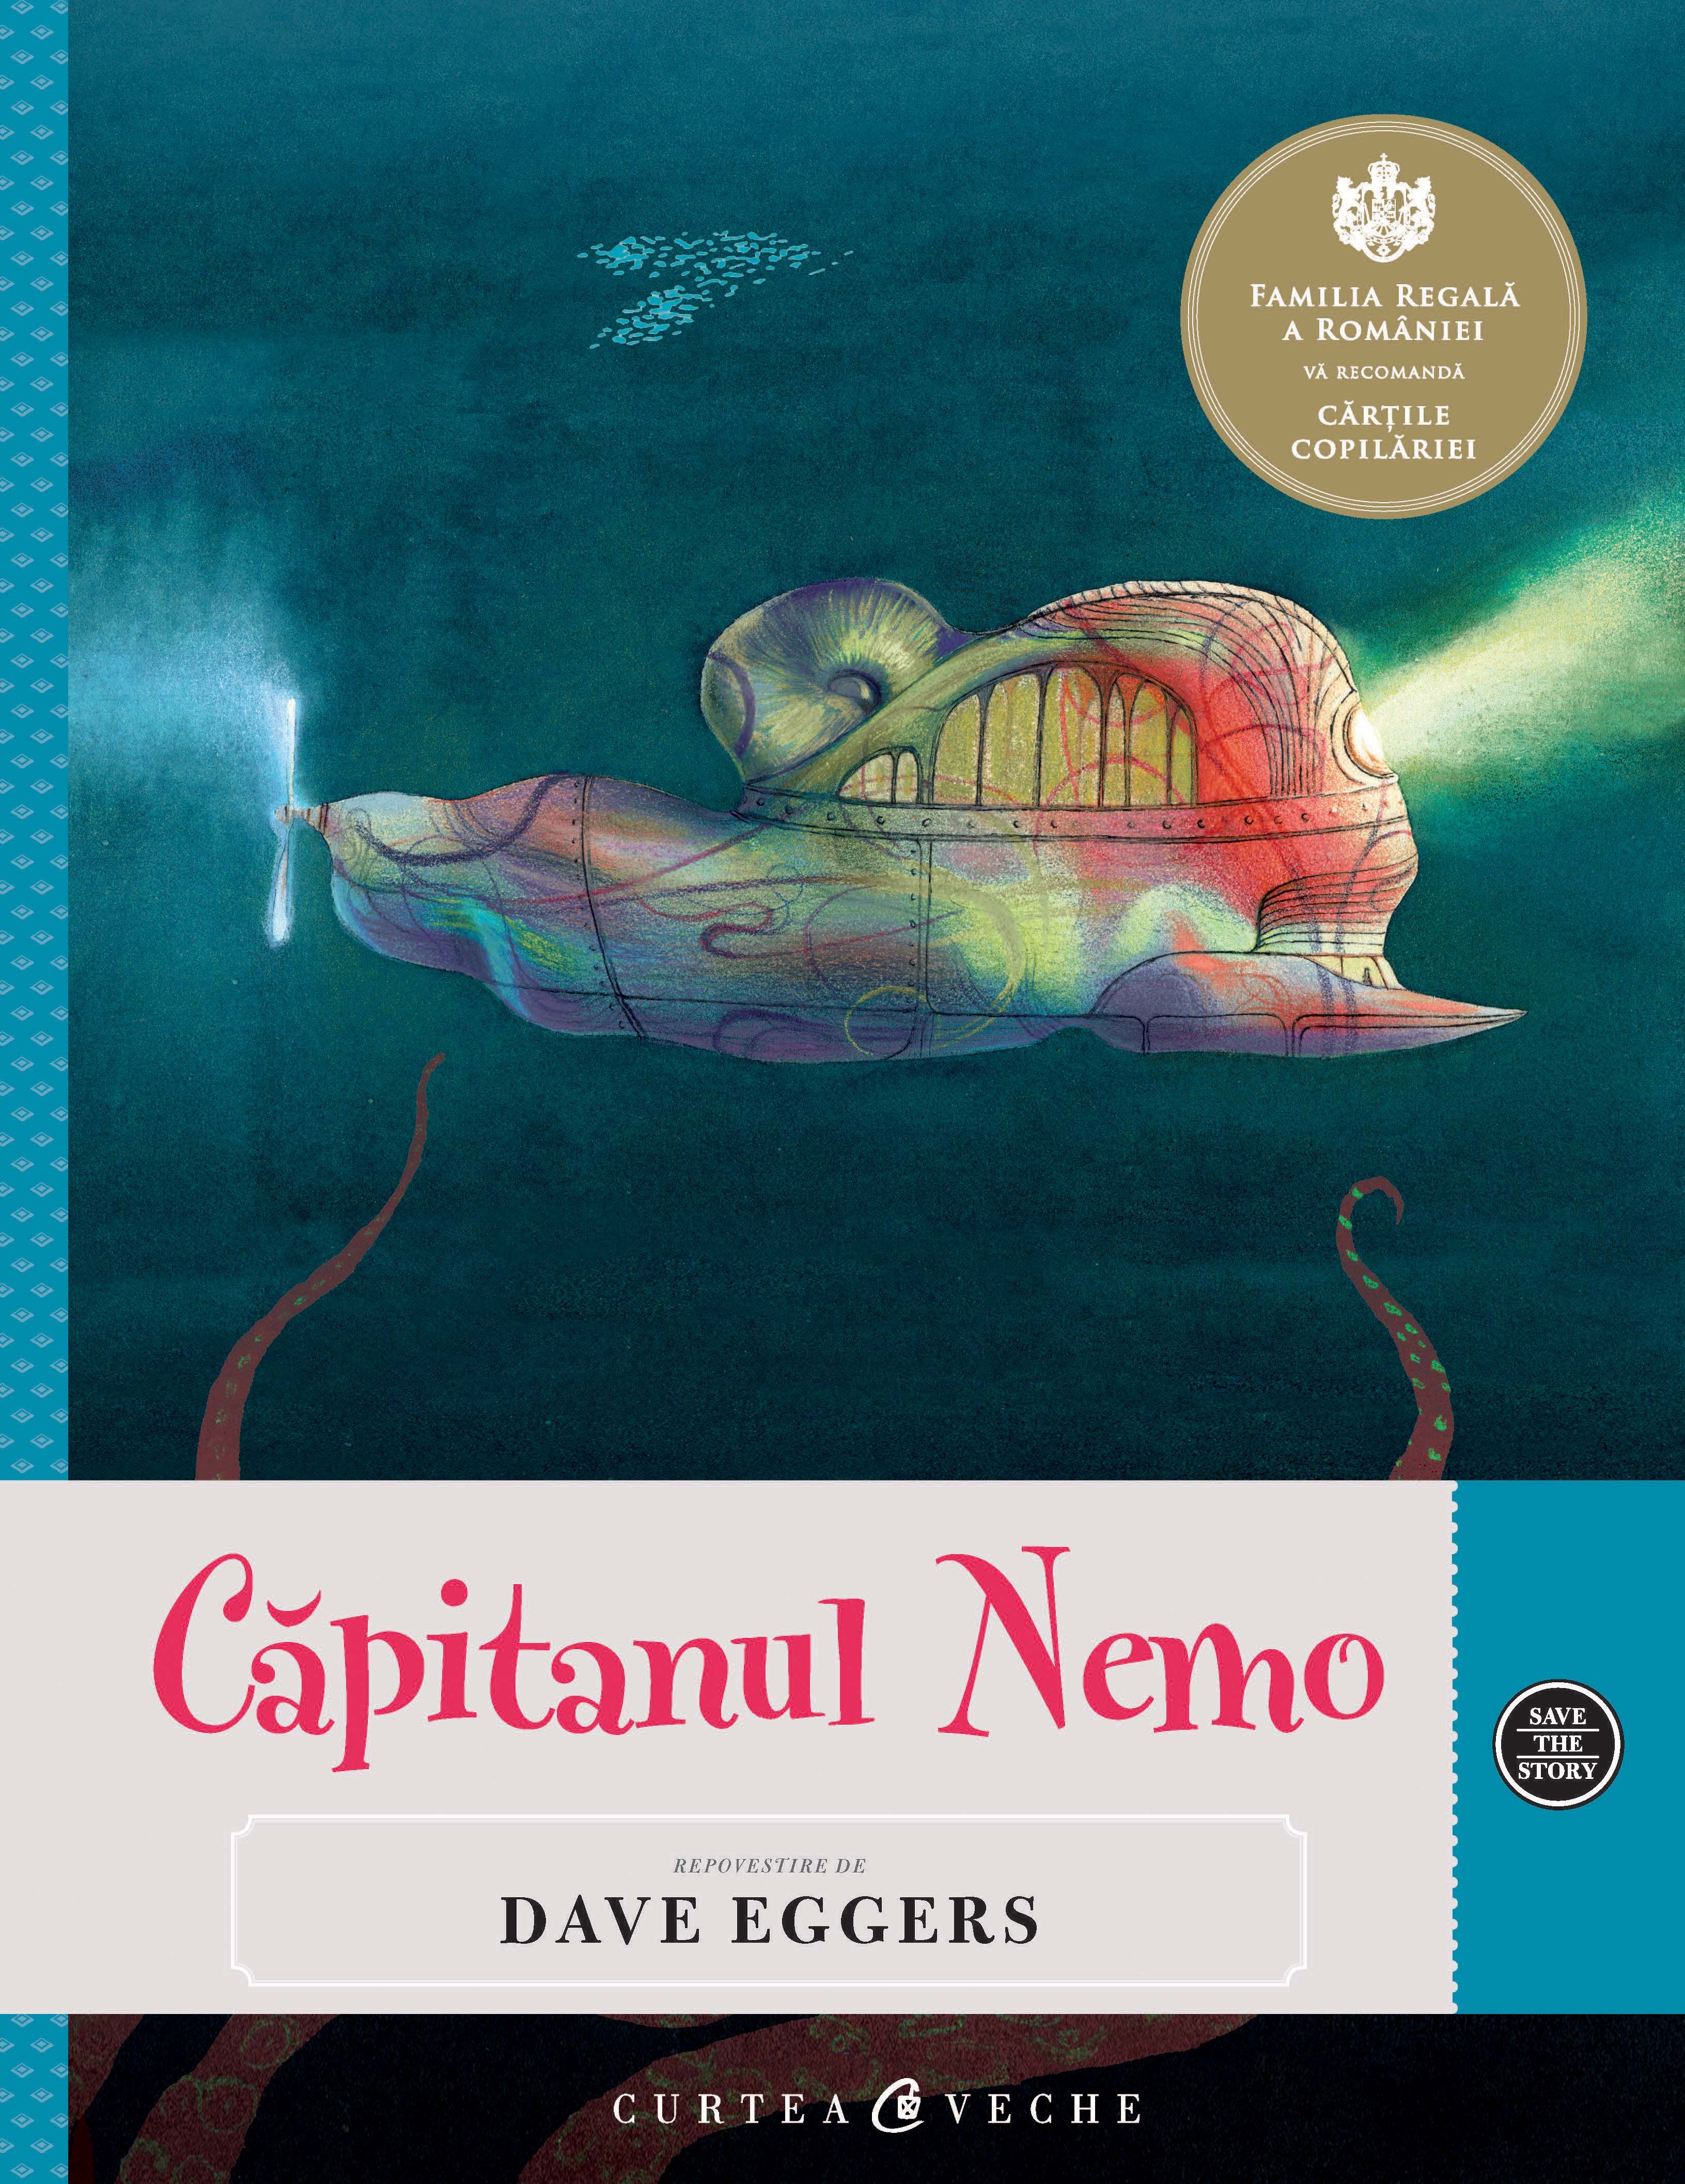 Capitanul Nemo - Repovestire de Dave Eggers